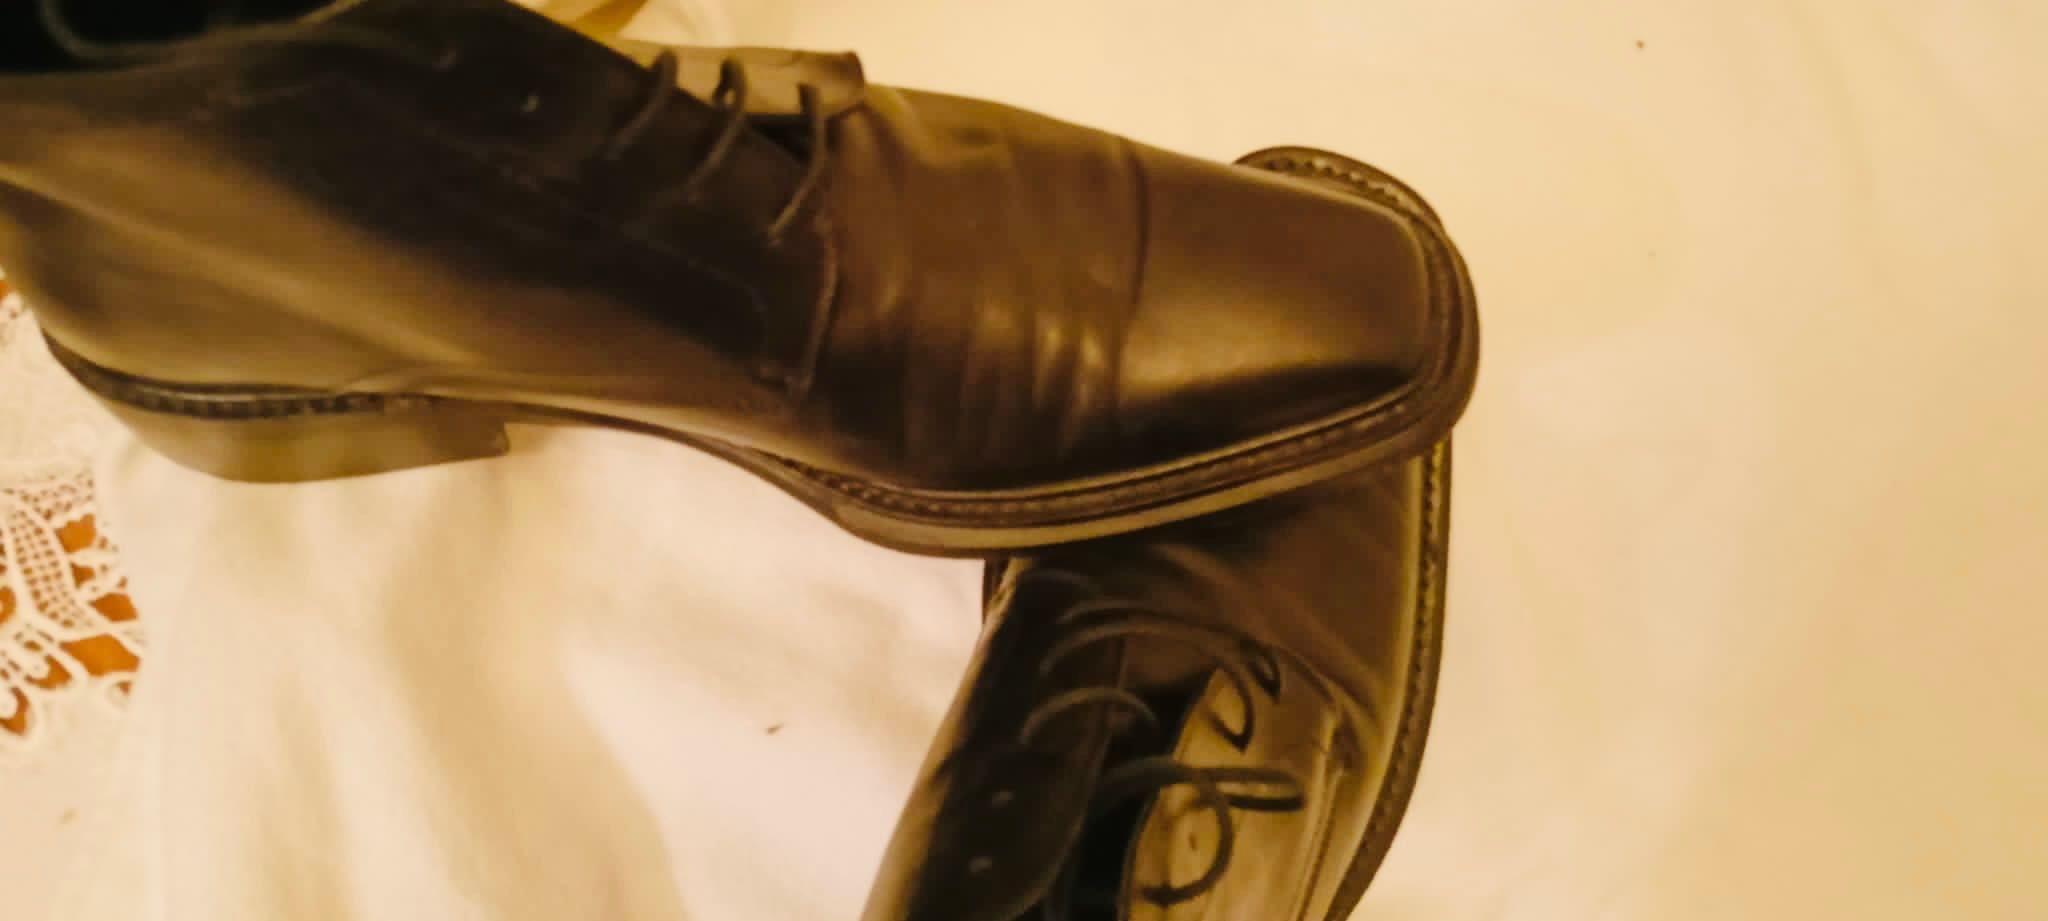 Męskie buty Vittorio Virgili, 43 rozmiar, skóra naturalna